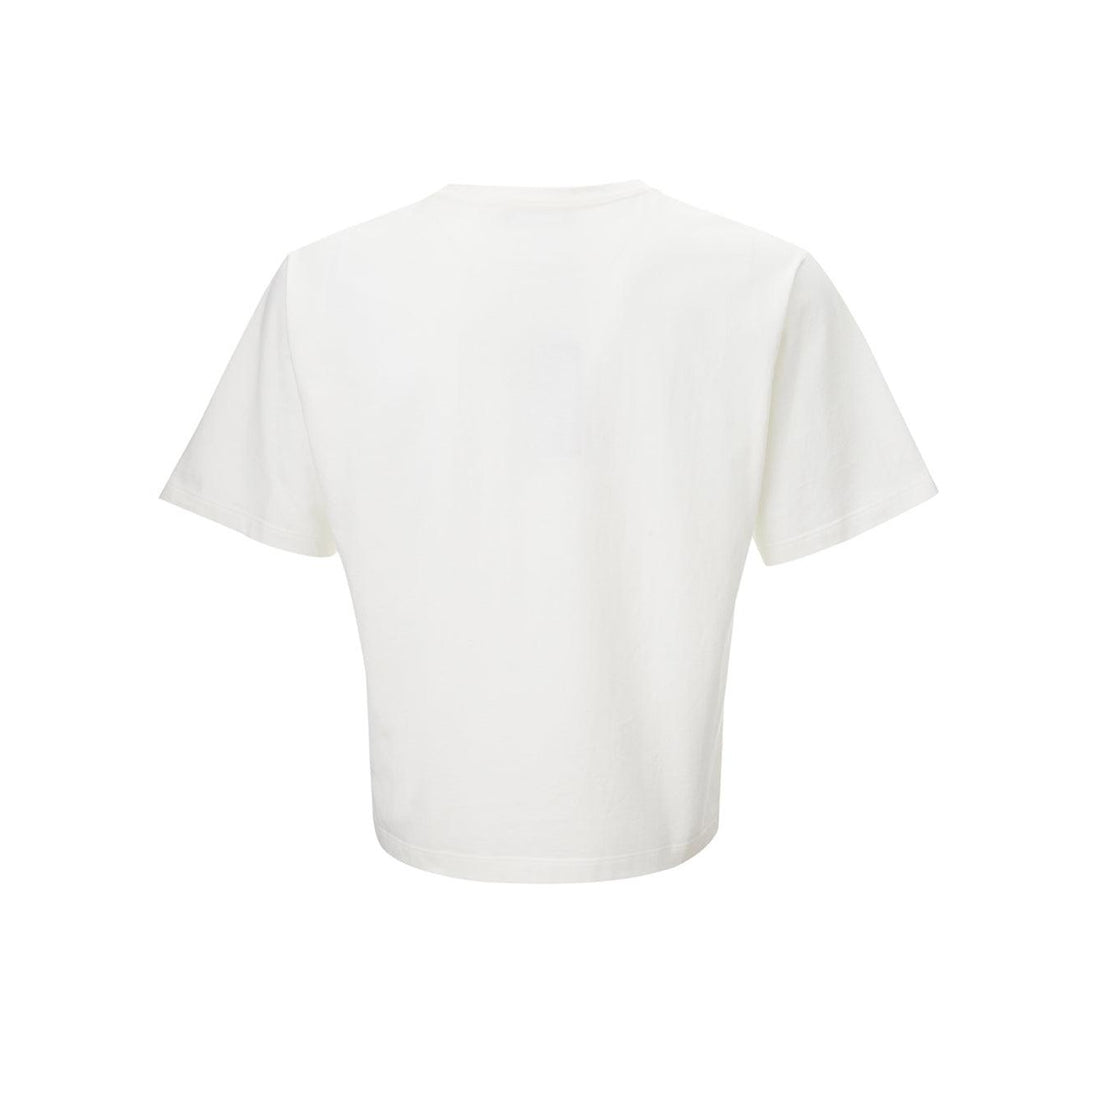 Dolce & Gabbana Elegant White Cotton Tee with 3D Logo